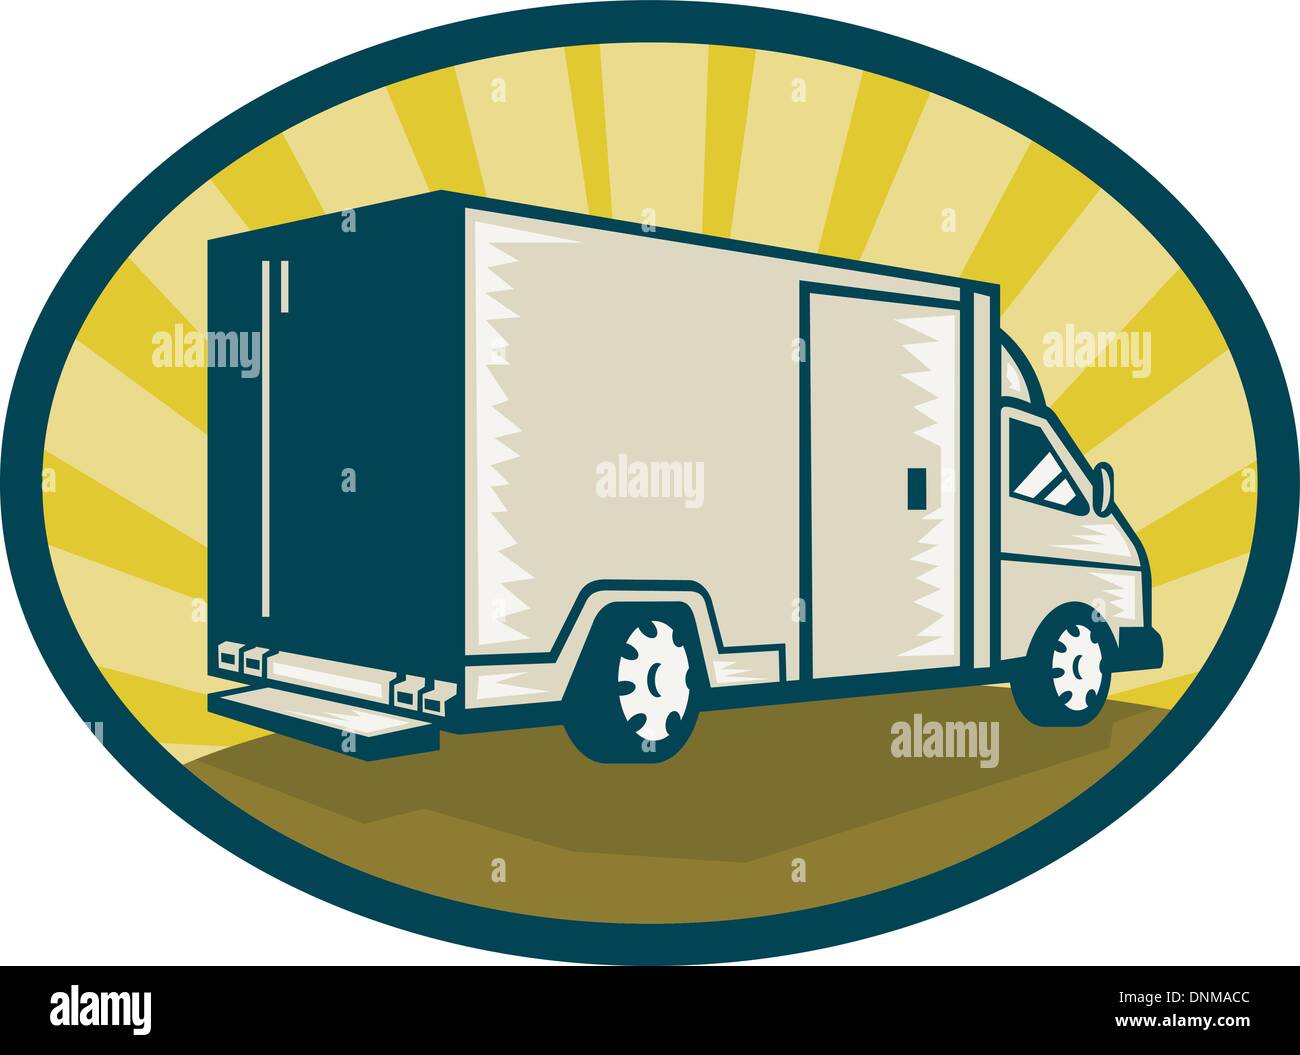 Illustration d'un camion de livraison définie côté vue de l'arrière à l'intérieur d'une ellipse Illustration de Vecteur